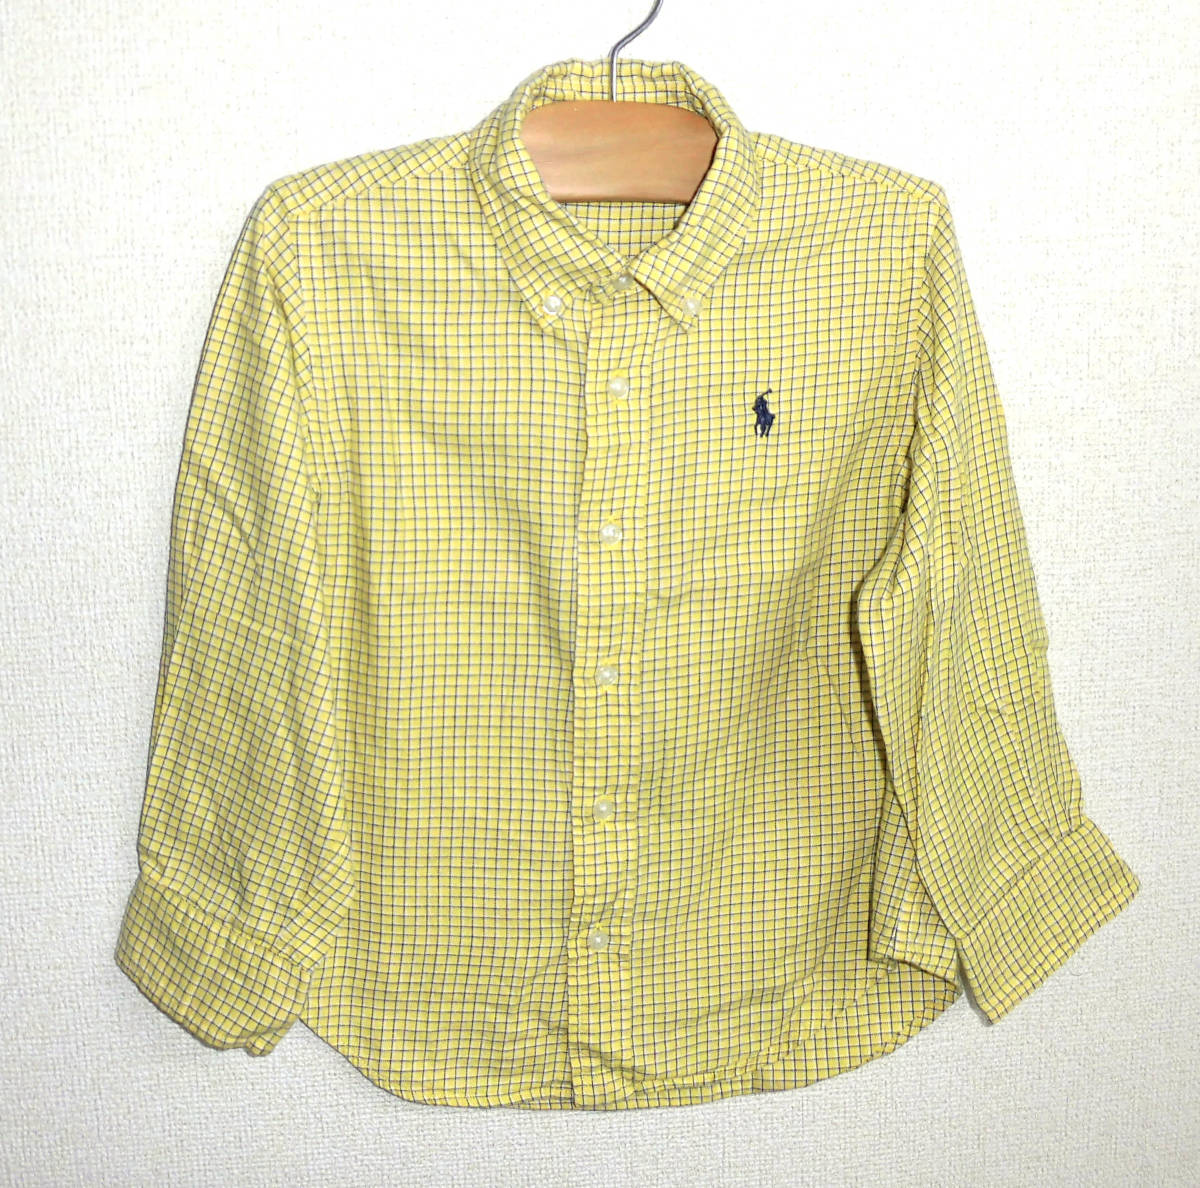  beautiful goods RALPH LAUREN/ Ralph Lauren KIDS child clothes check pattern long sleeve shirt 110 yellow 